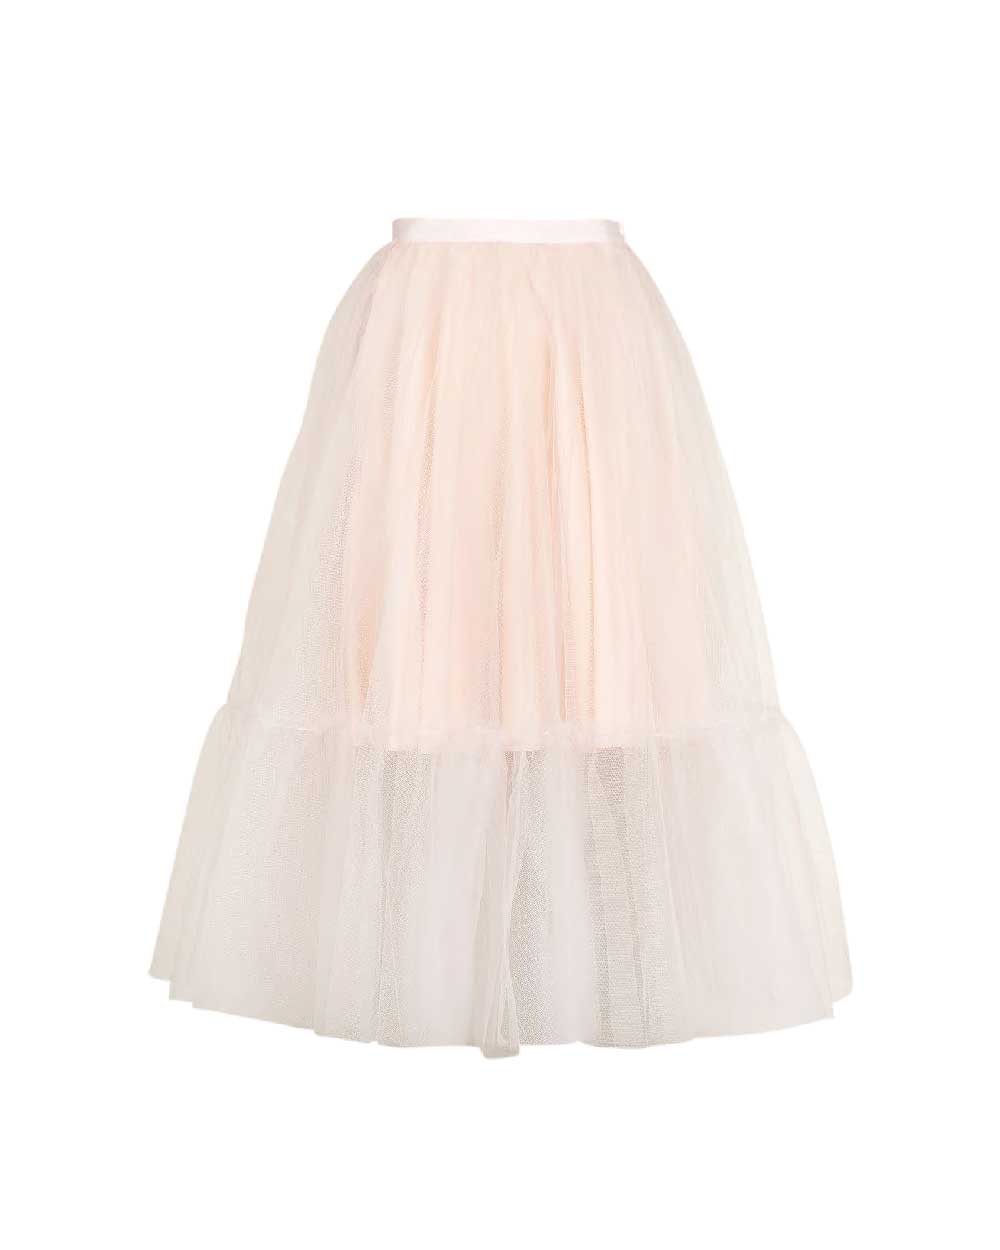 Topshop skirt, $112